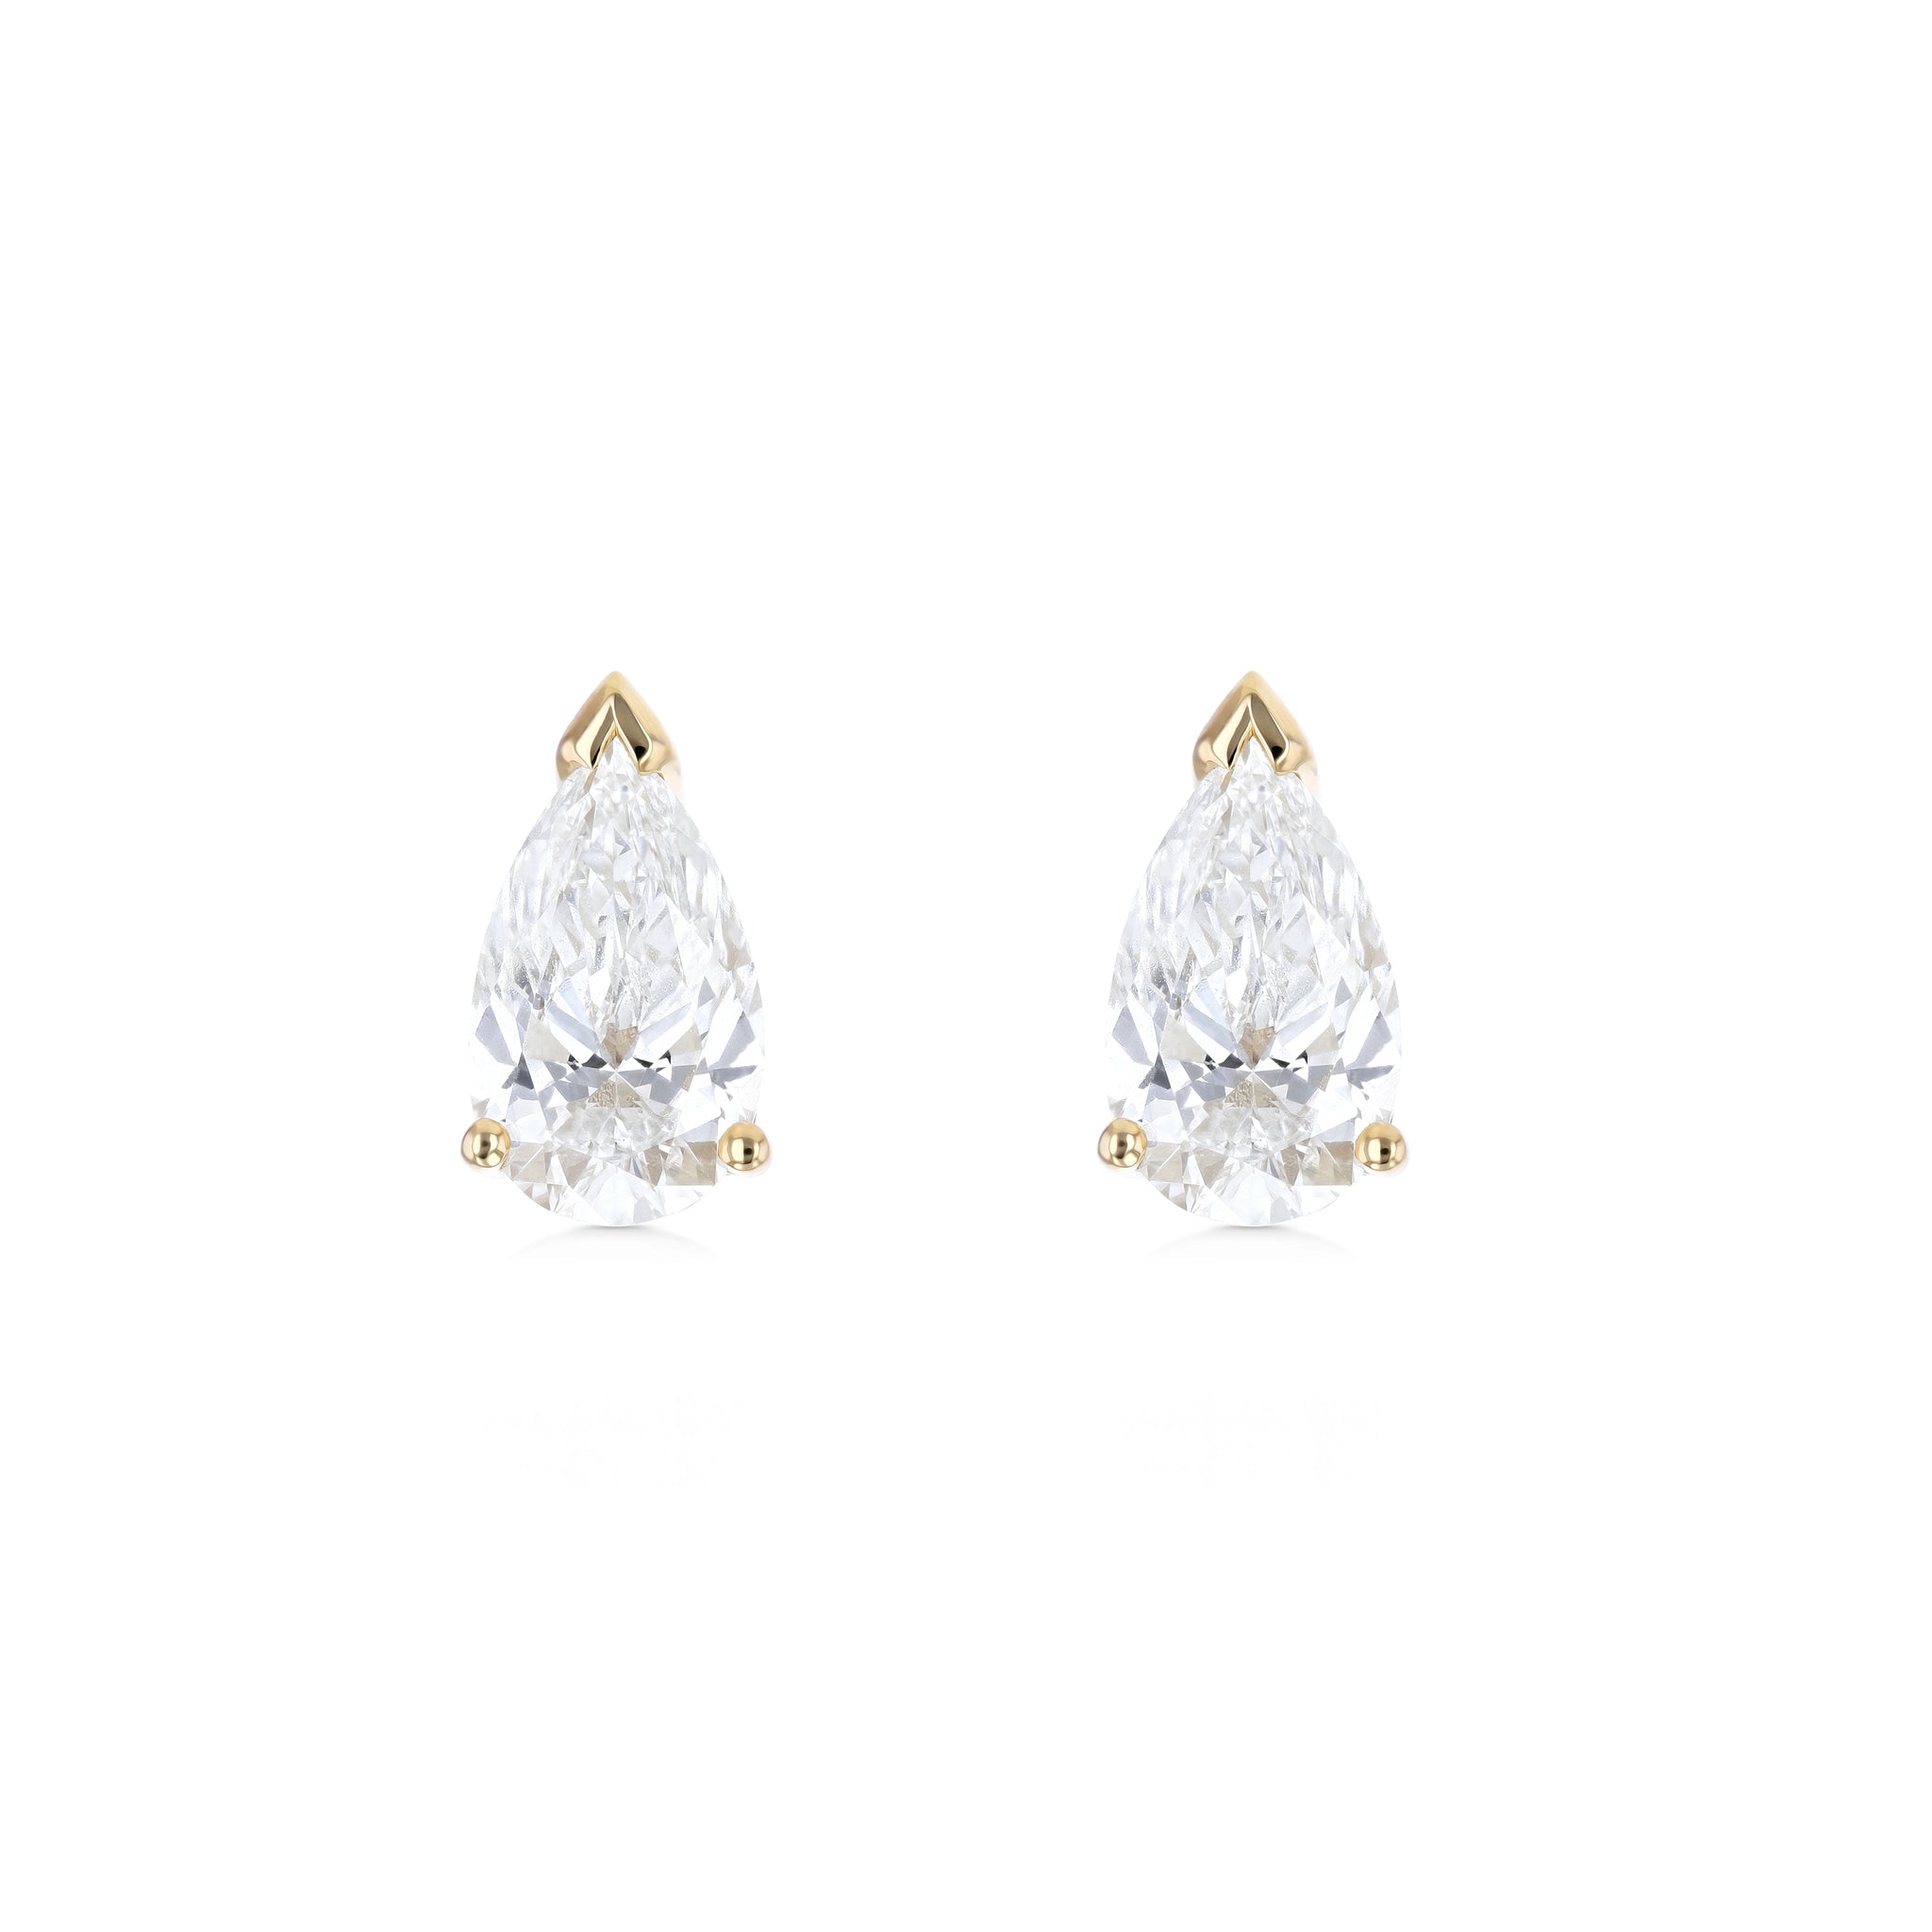 Pear Shape Diamond Earrings - Lab Grown Diamonds - 18K Gold